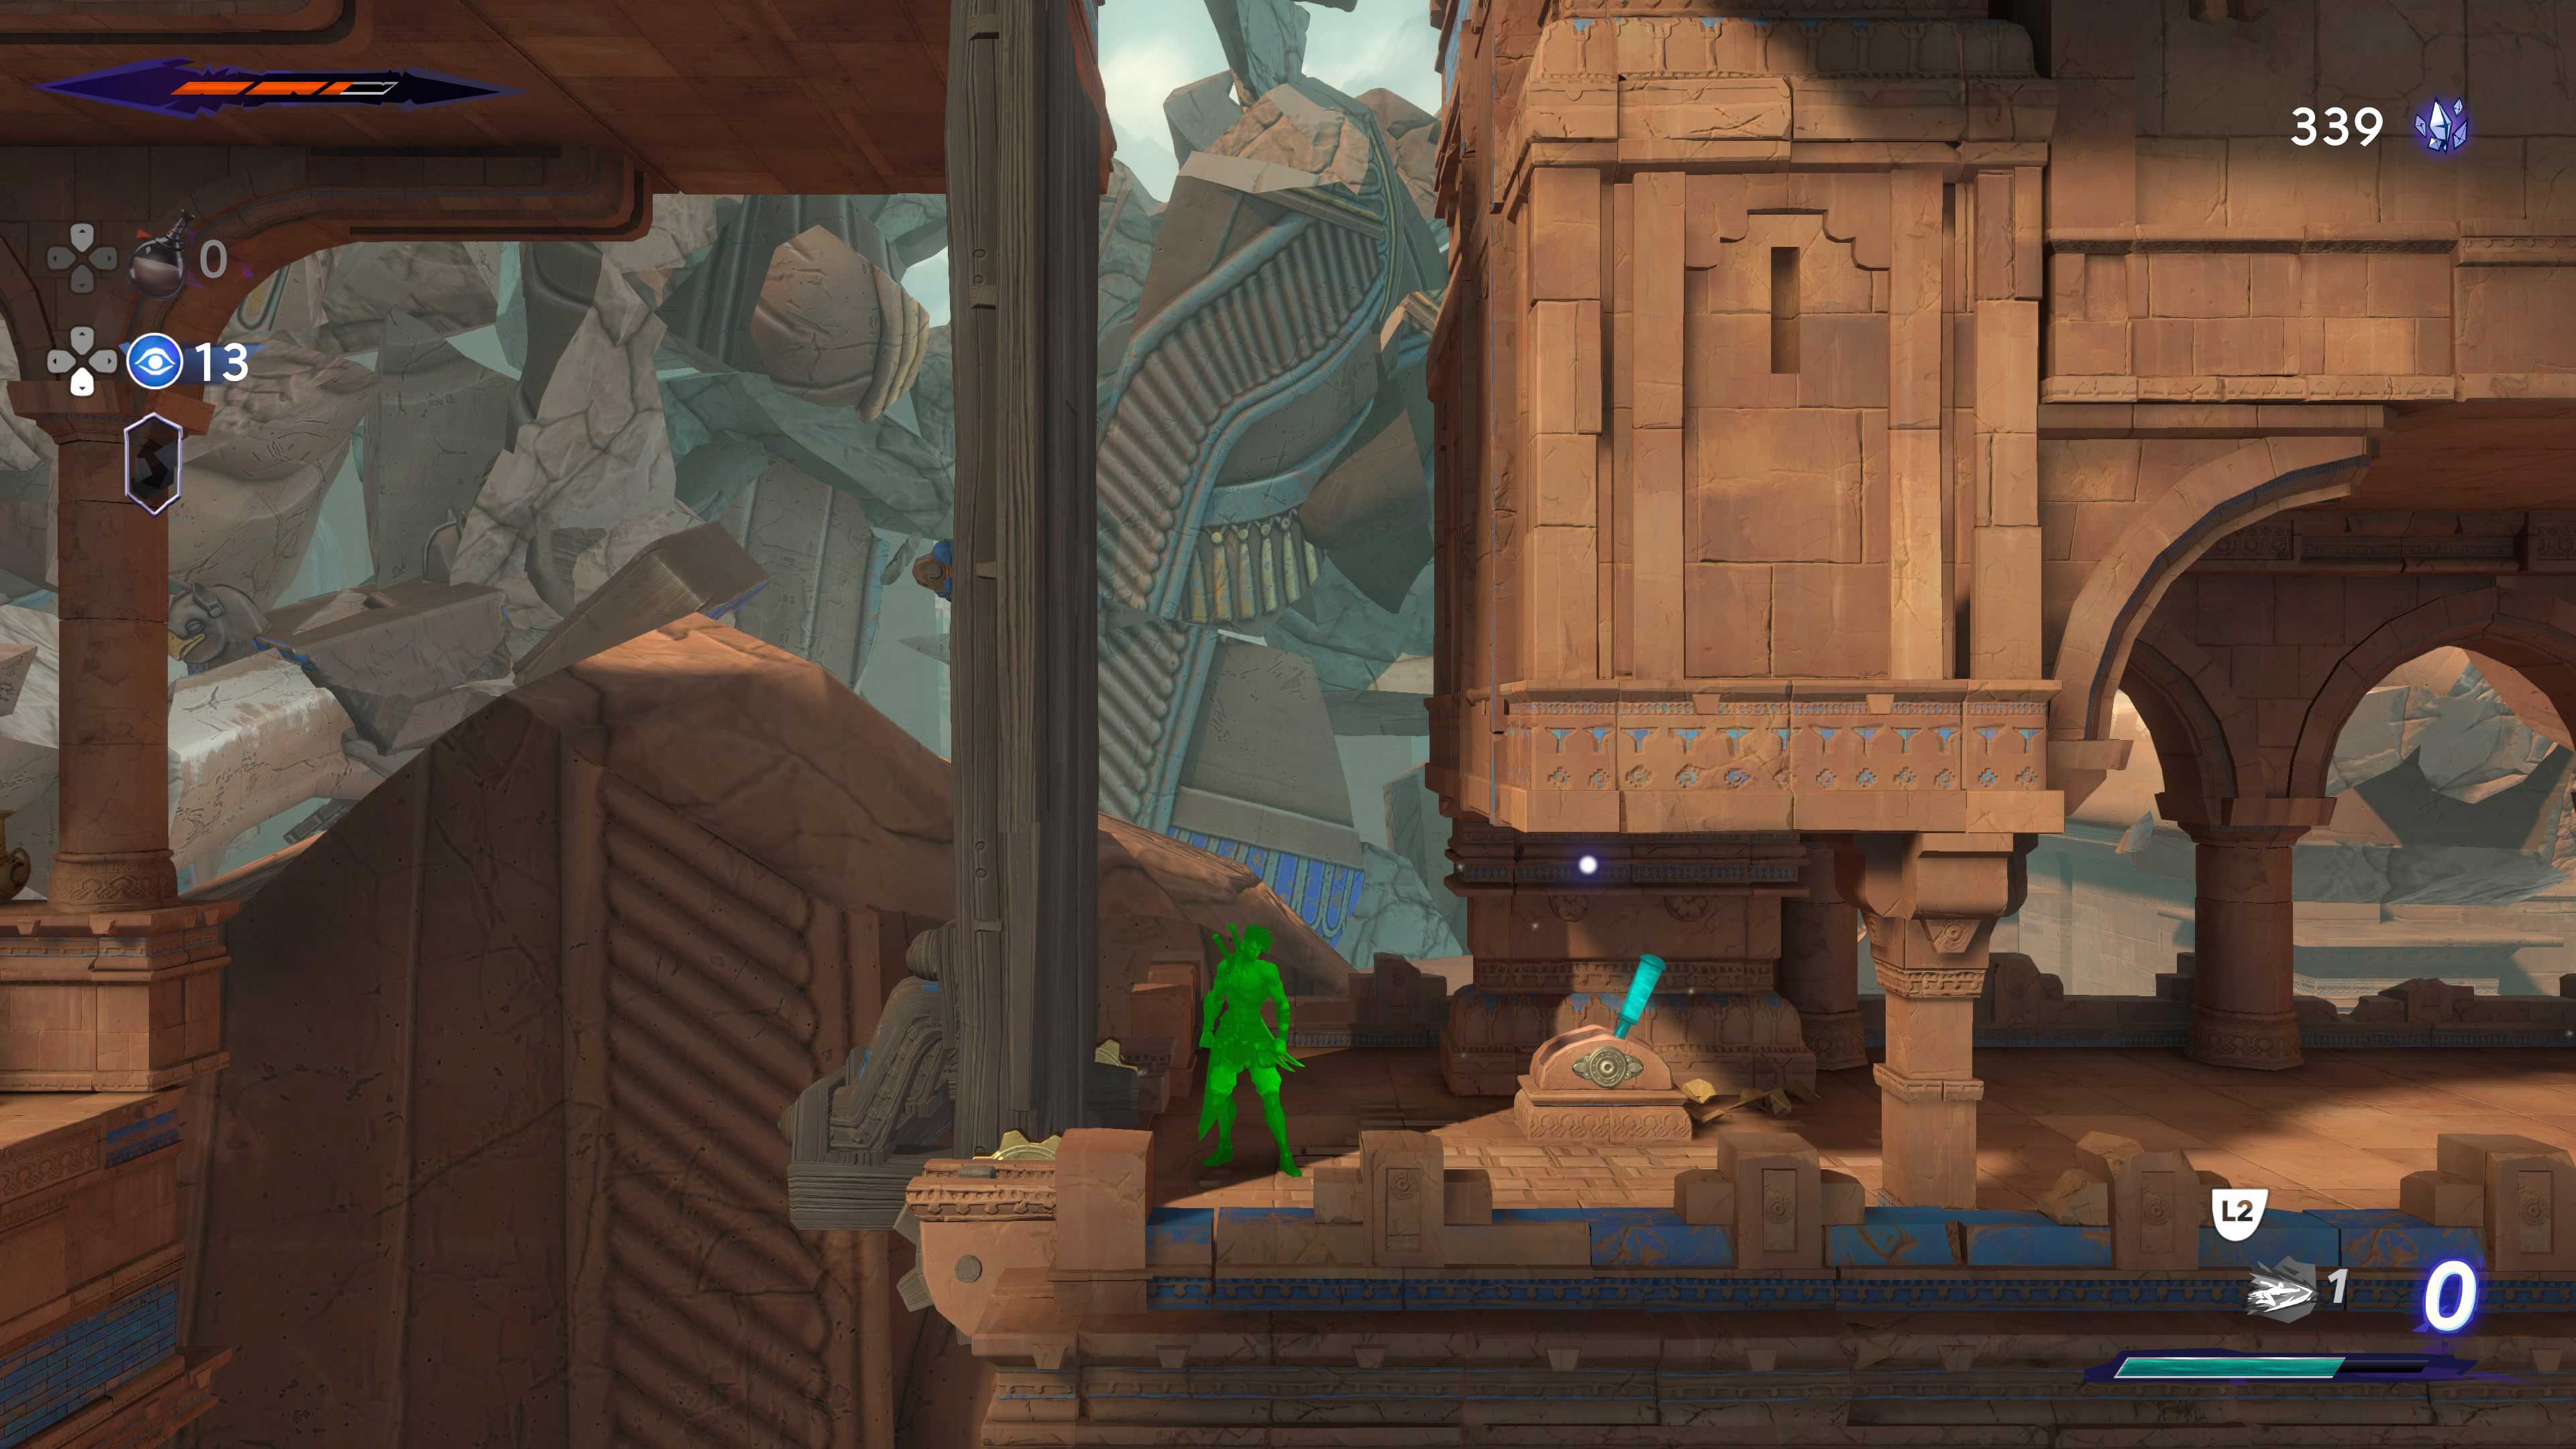 Descrição da Imagem: Cena de gameplay de jogo 2D que mostra interação com itens no caso uma alavanca